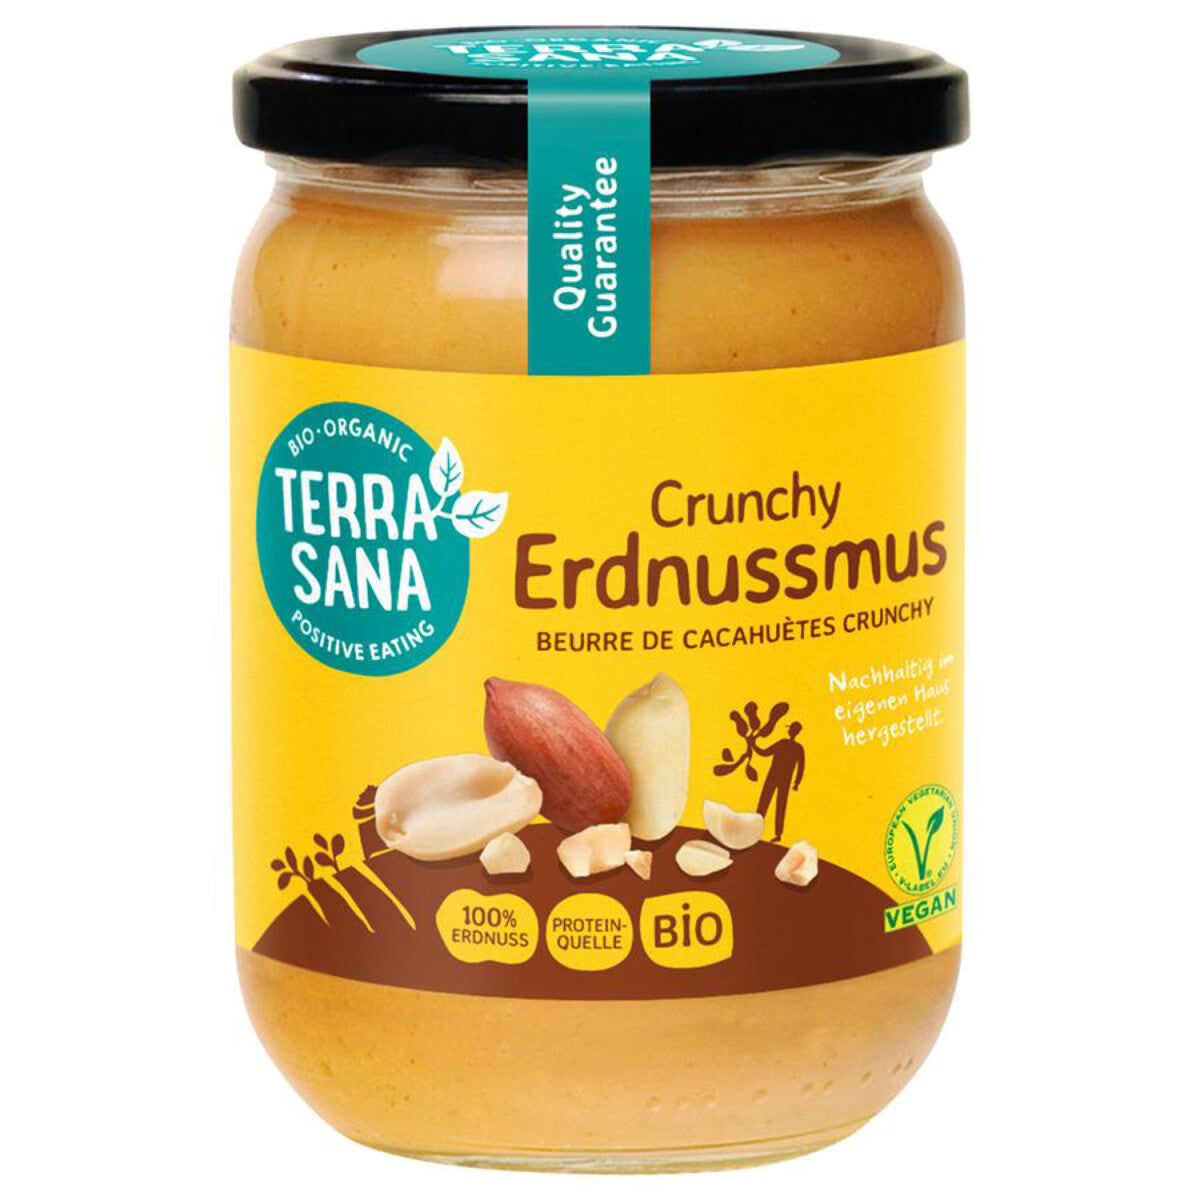 TERRASANA Erdnussmus crunchy - 500 g